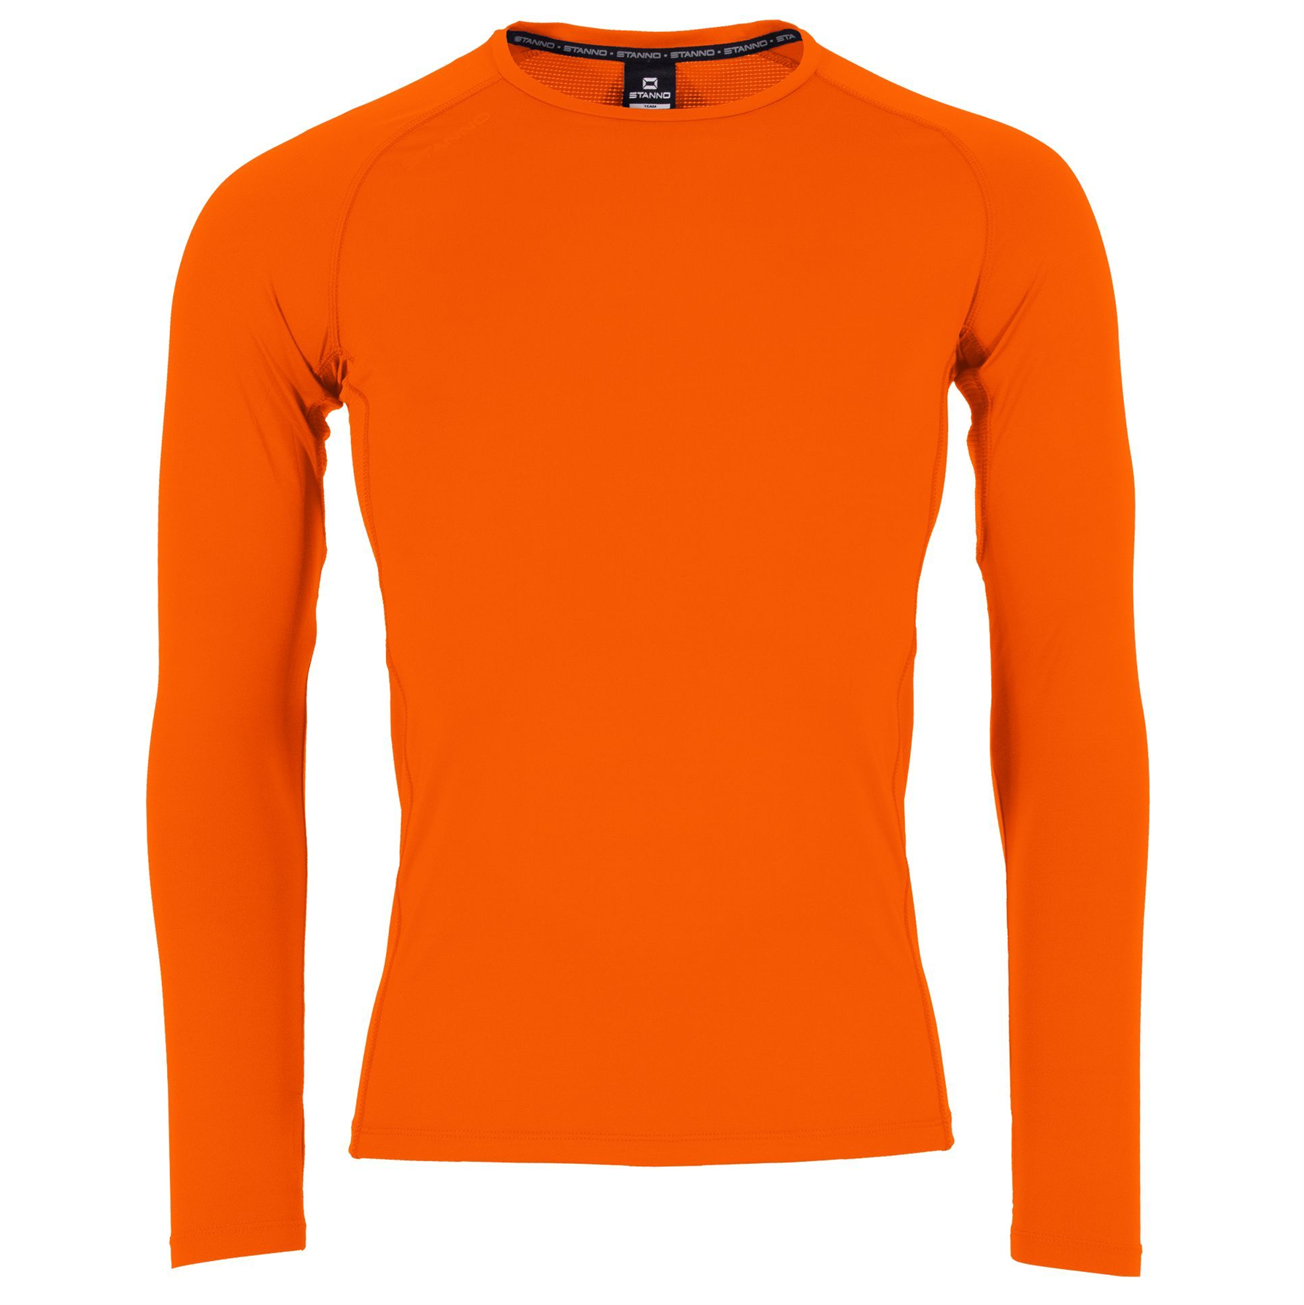 Wrens Nest FC - Baselayer Long Sleeve Shirt